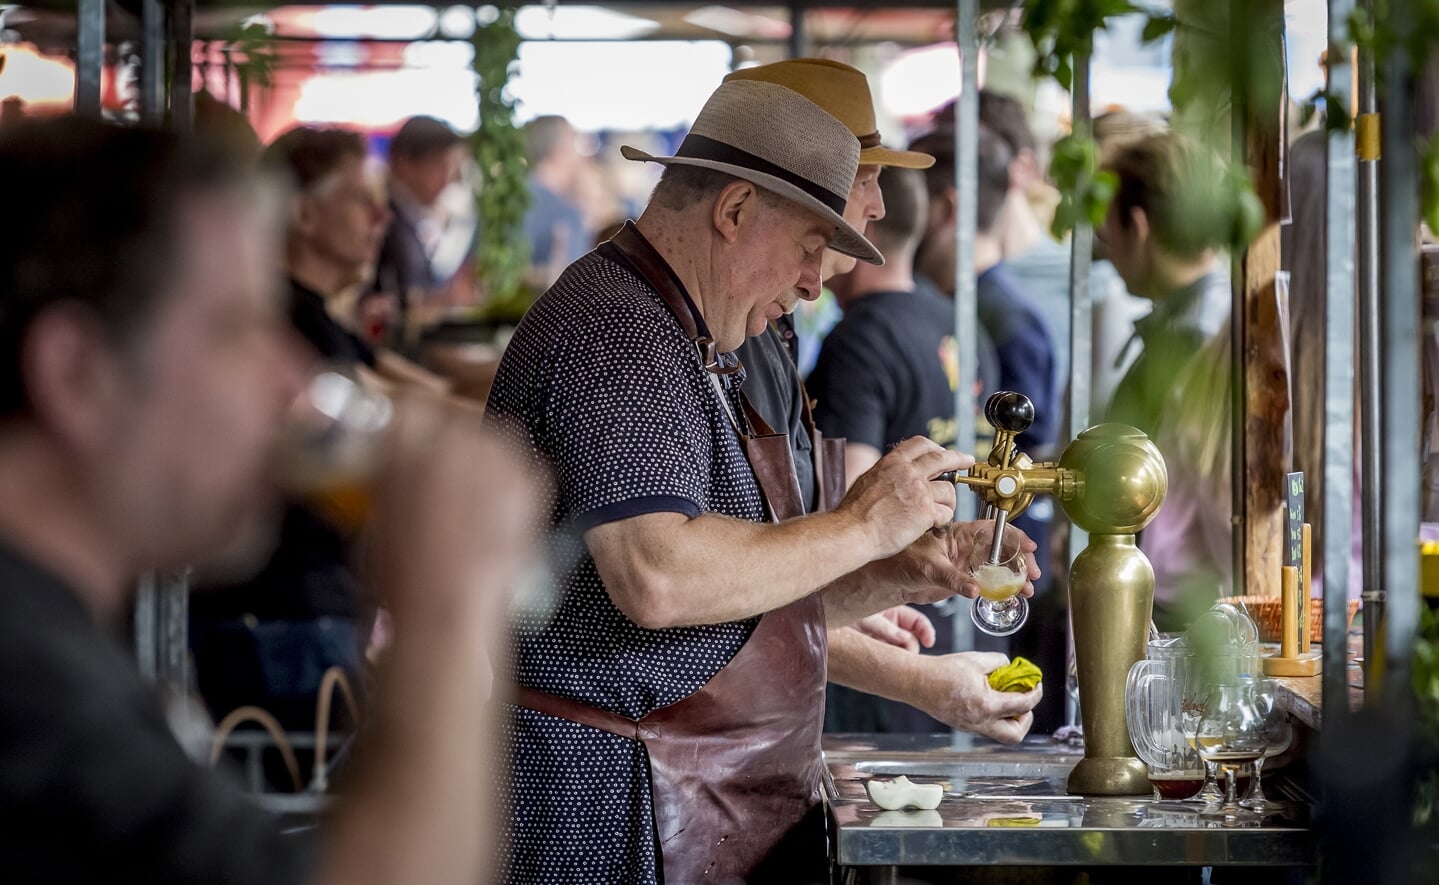 Tijdens proeverij Biereloth laten hoofdzakelijk kleine brouwers hun speciaalbieren proeven in de Rozemarijnstraat.